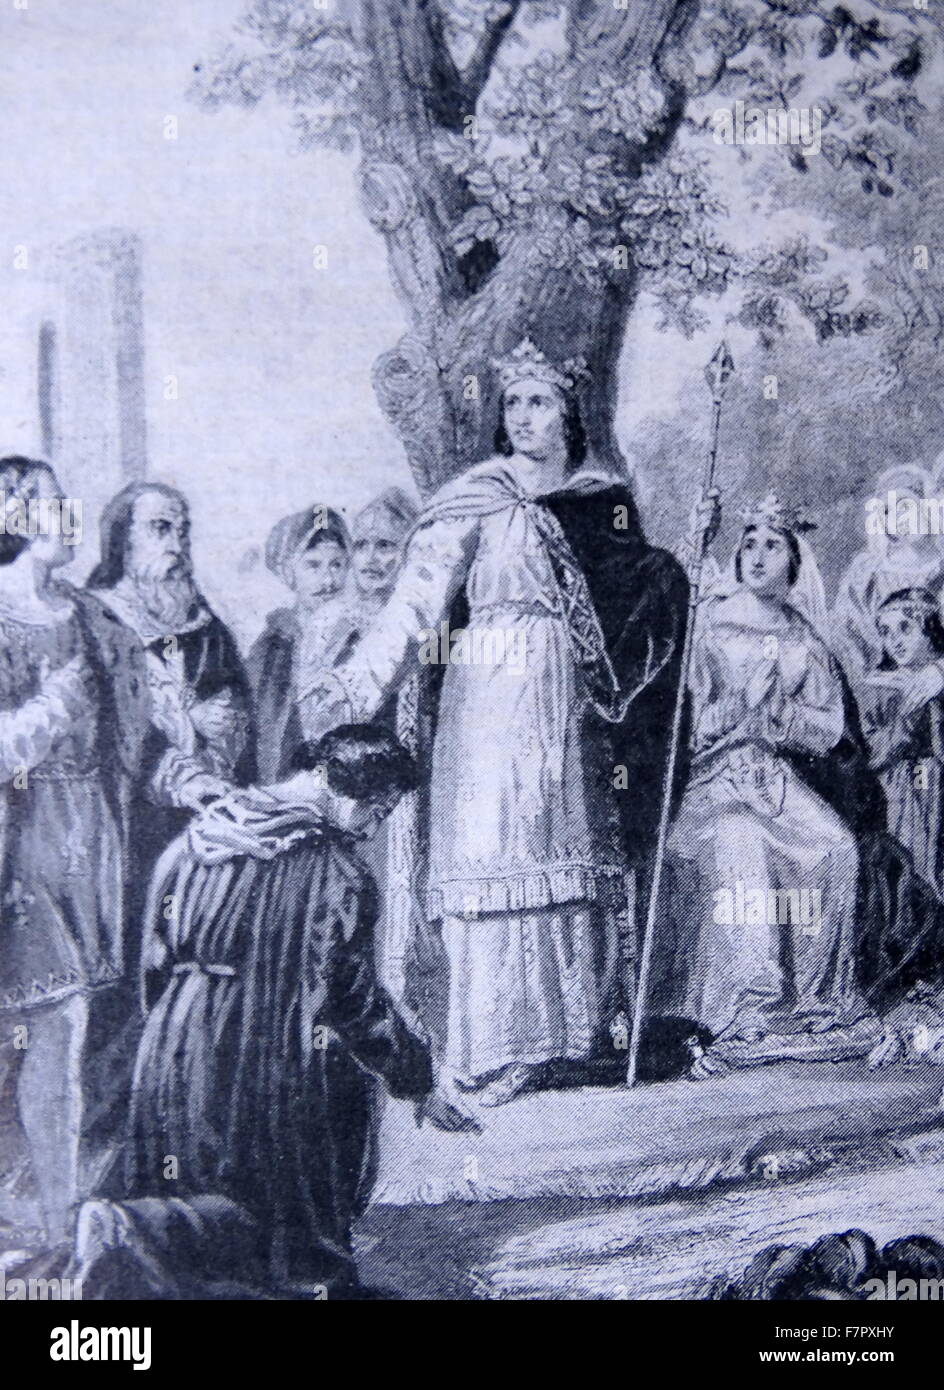 Luigi IX (25 Aprile 1214 - 25 agosto 1270), comunemente noto come Saint Louis, era un Capetian Re di Francia che regnò dal 1226 fino alla sua morte. Louis è stato incoronato a Reims all'età di dodici anni dopo la morte di suo padre Luigi VIII il leone, ma sua madre, Bianca di Castiglia, governato il regno fino a quando ha raggiunto la maturità Foto Stock